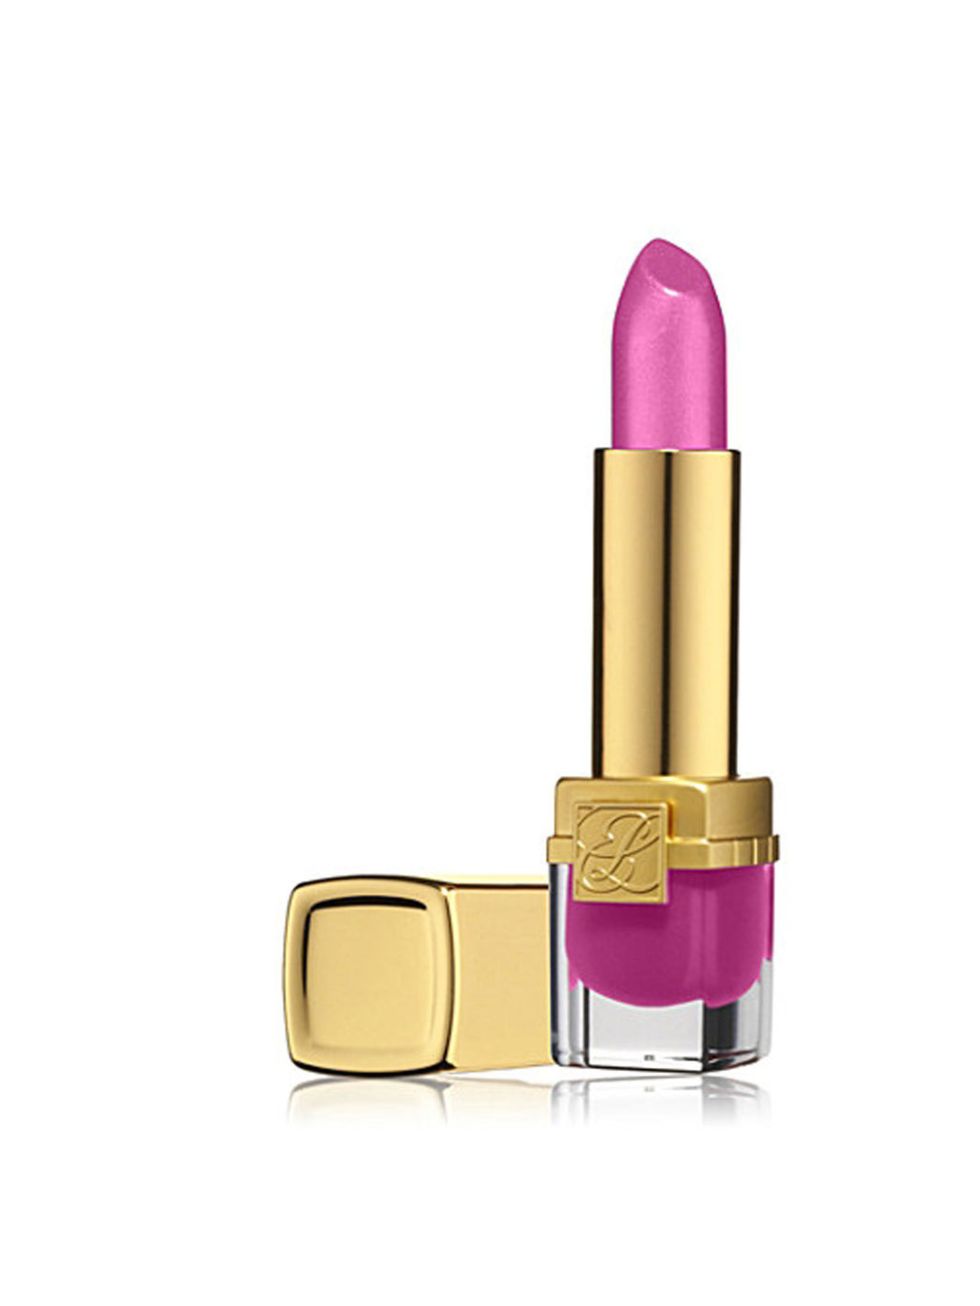 <p>Estee Lauder 'pink parfait' lipstick, £18.50, at <a href="http://www.selfridges.com/en/Beauty/Brand-rooms/Designer/ESTEE-LAUDER/Makeup/Pure-Color-Long-Lasting-Lipstick_327-81004877-PCLIPSTICKS/">Selfridges </a></p>